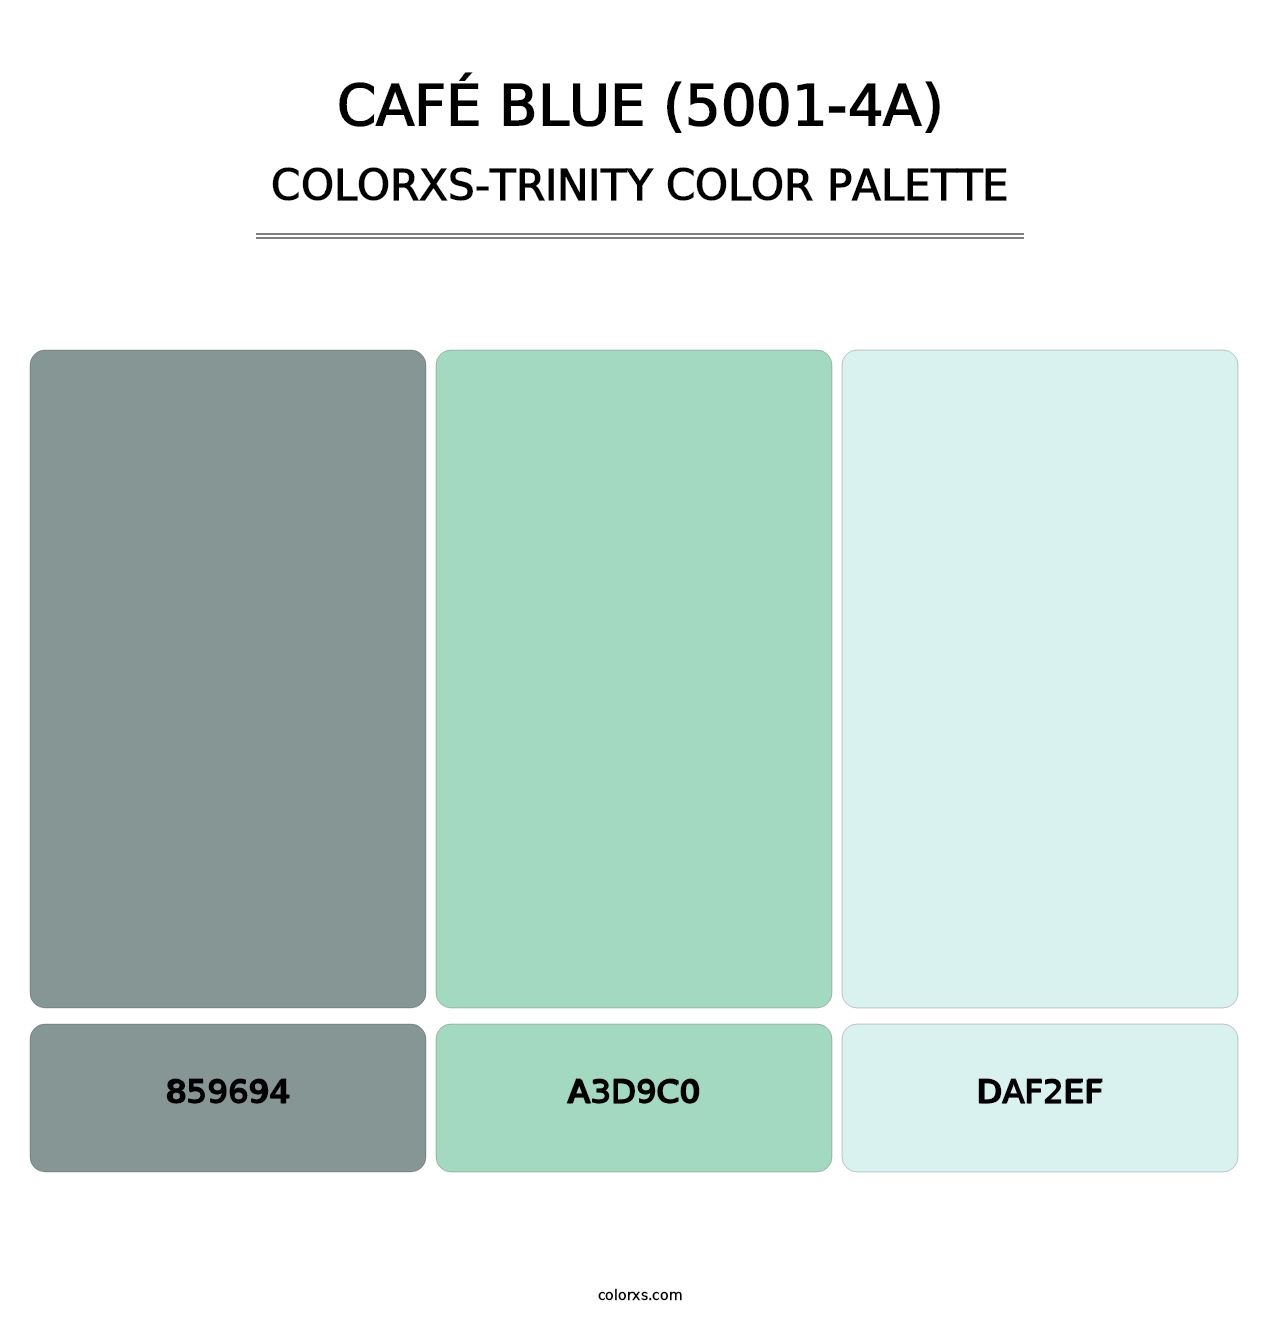 Café Blue (5001-4A) - Colorxs Trinity Palette